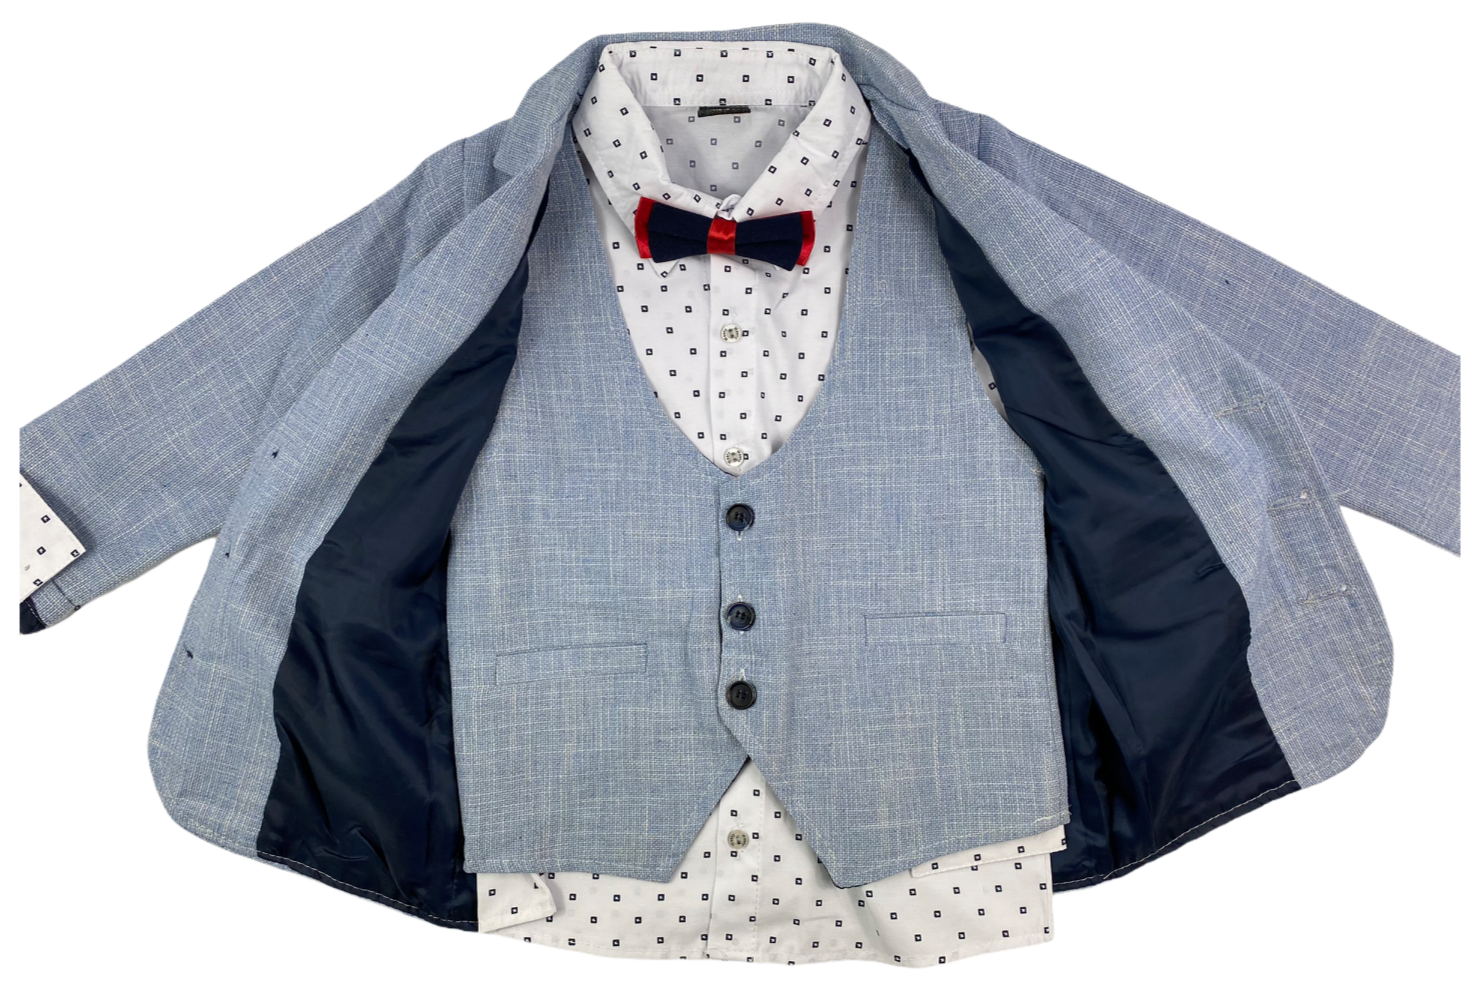 Sakko, Hose, Hemd, Fliege Weste – festliche in hellblau/dun Aboutkidz Mode & Anzug